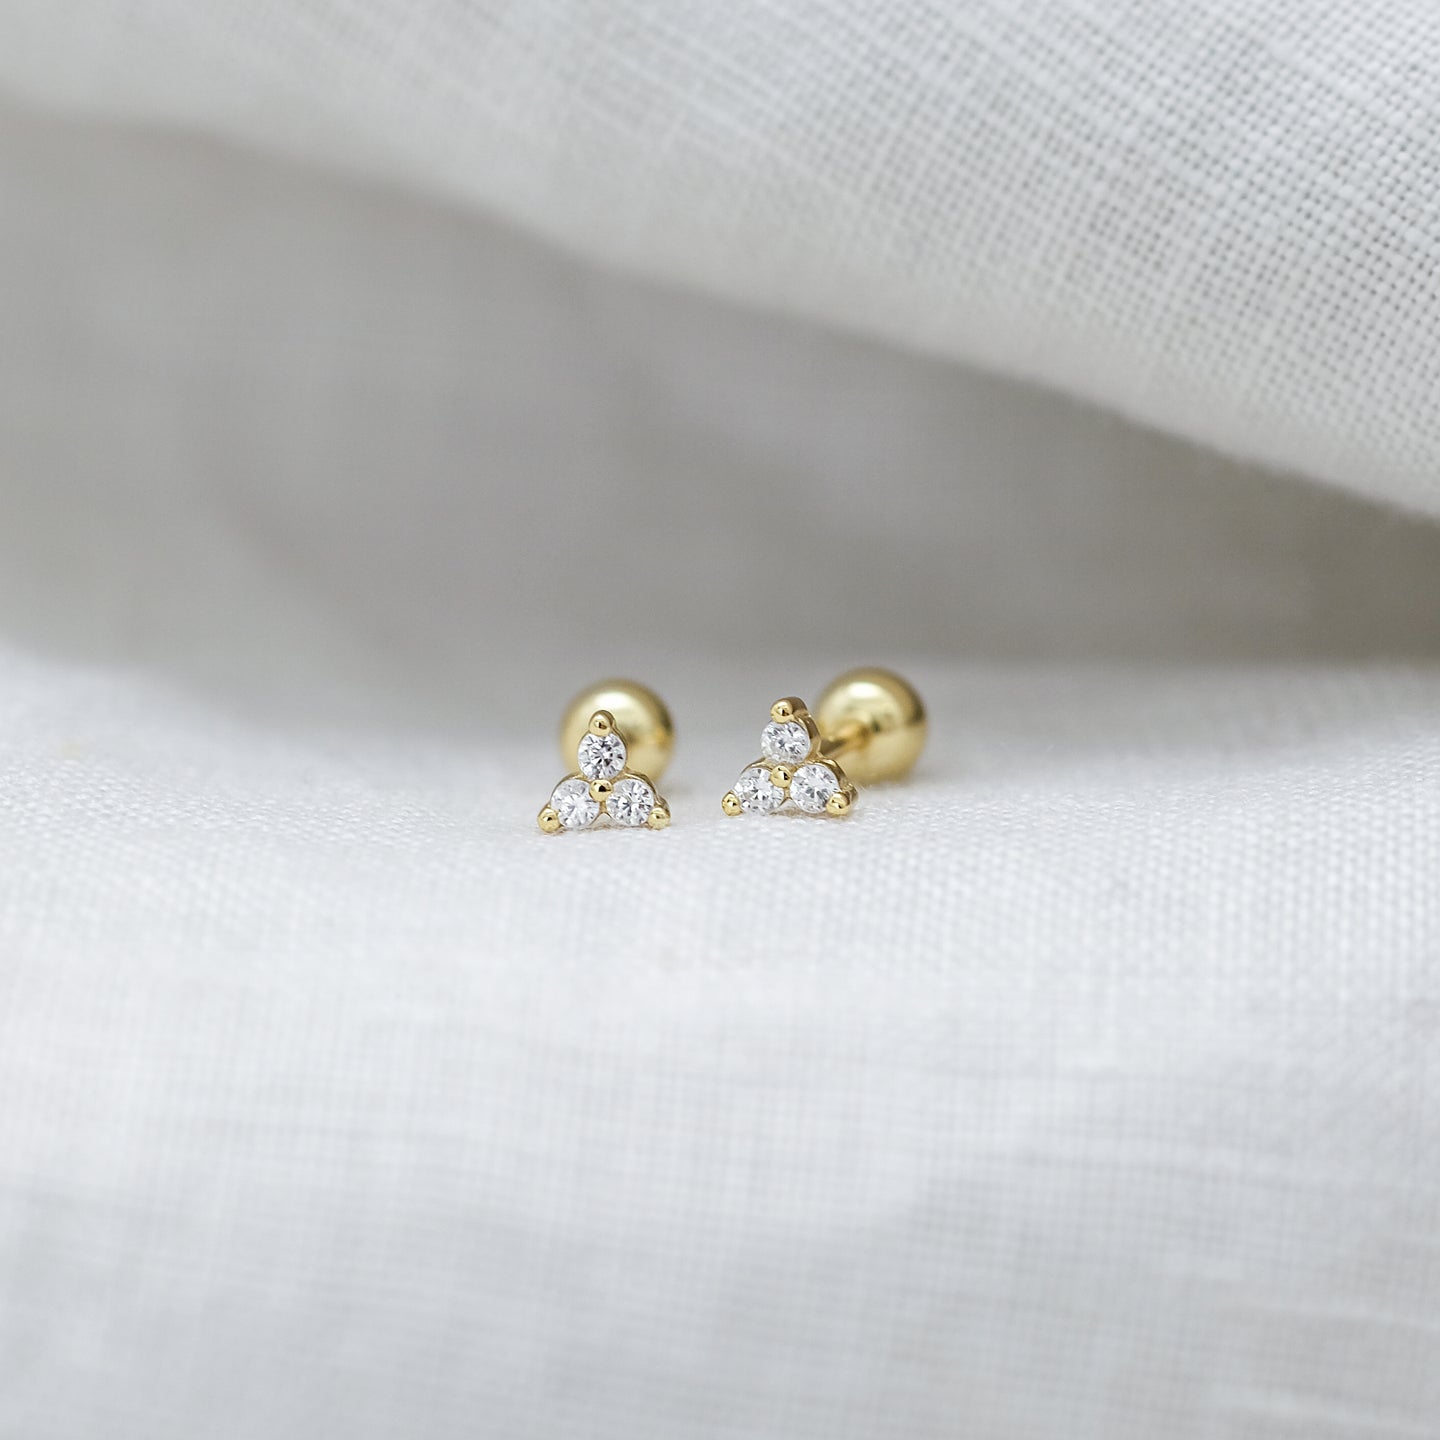 files/nena-cz-stud-earrings-18k-gold-vermeil-1.jpg